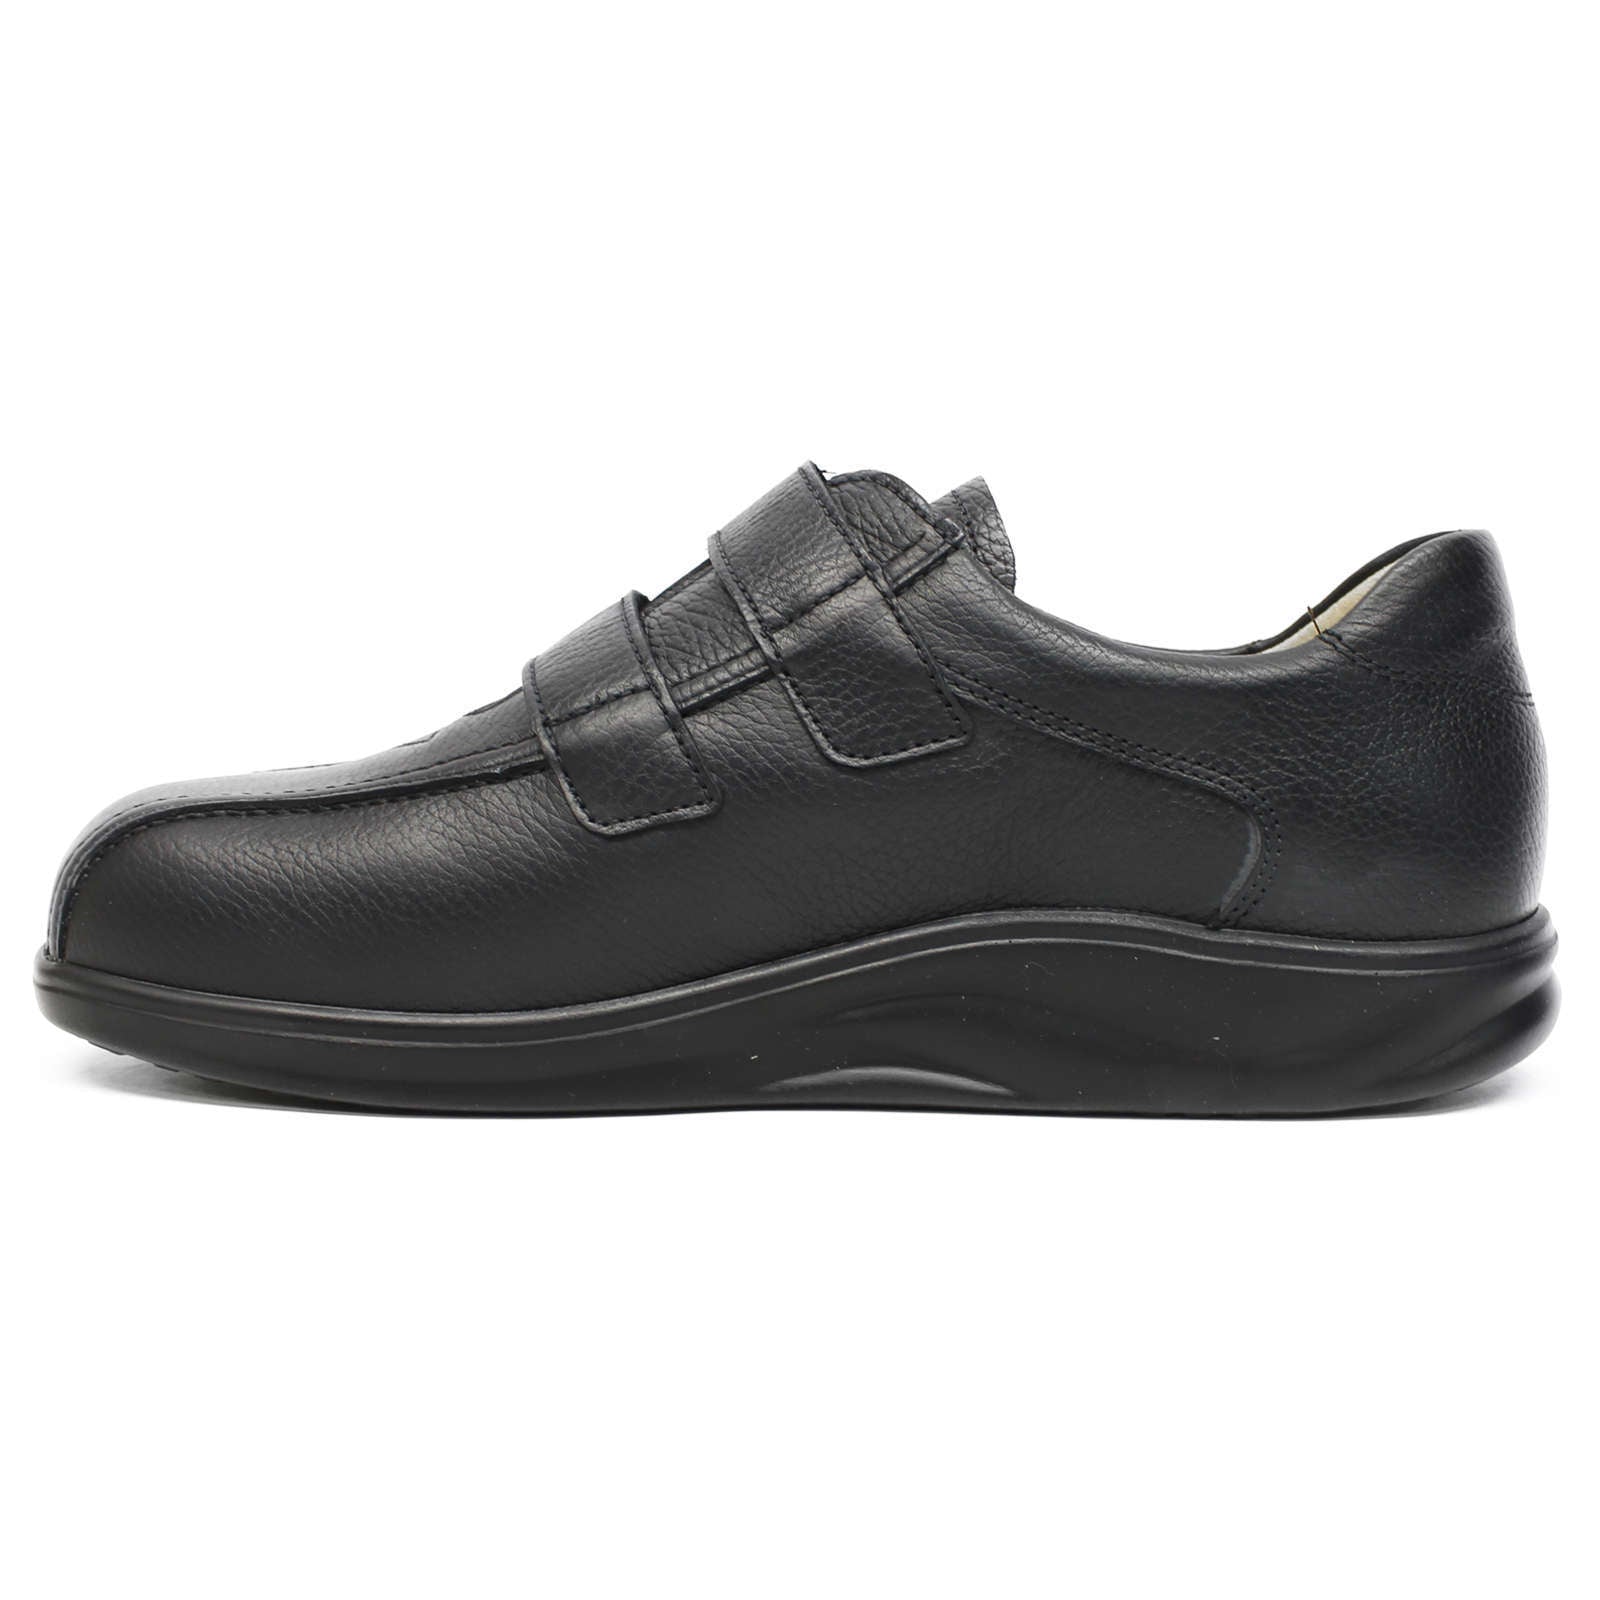 Finn Comfort Cambridge Full Grain Leather Men's Slip-On Shoes#color_black